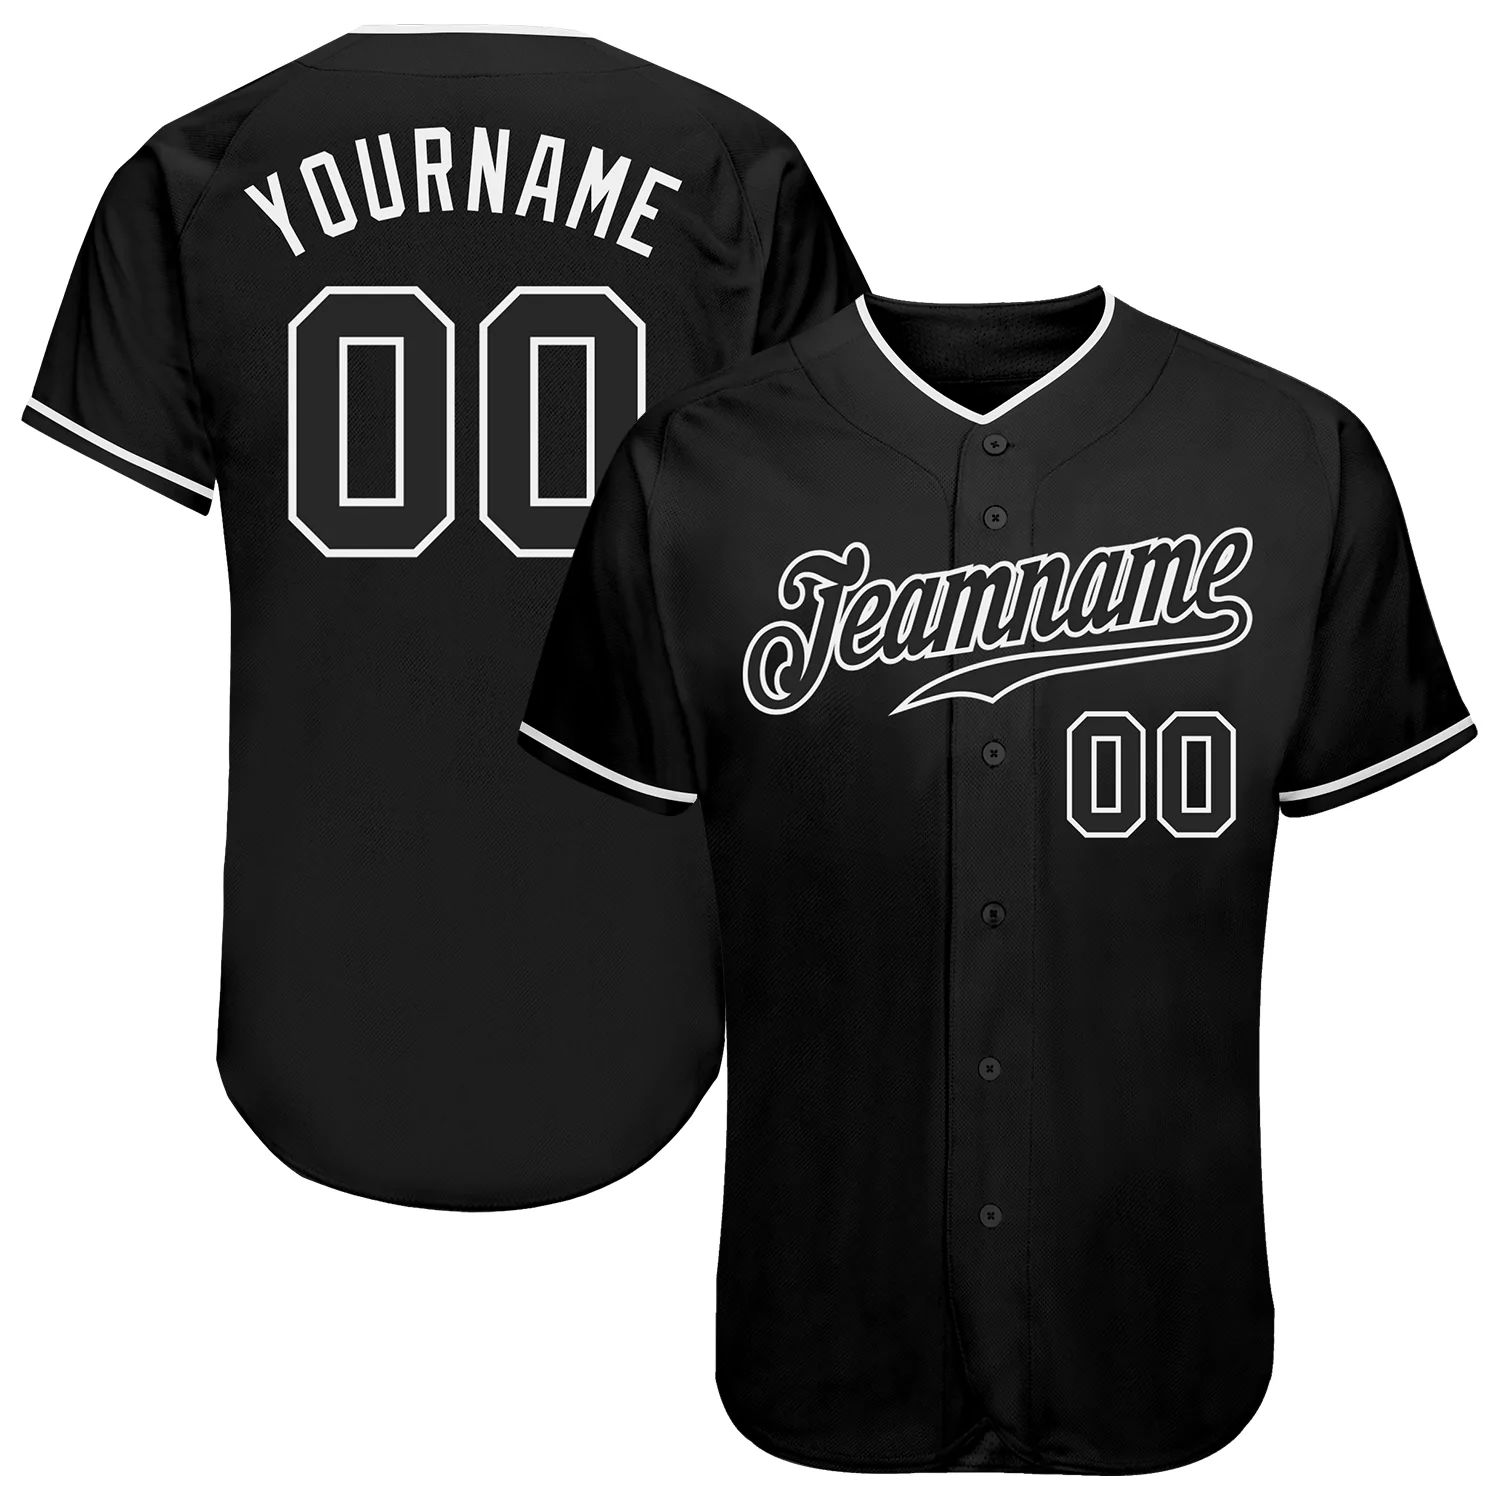 build-white-black-baseball-black-jersey-authentic-black0368-online-1.jpg